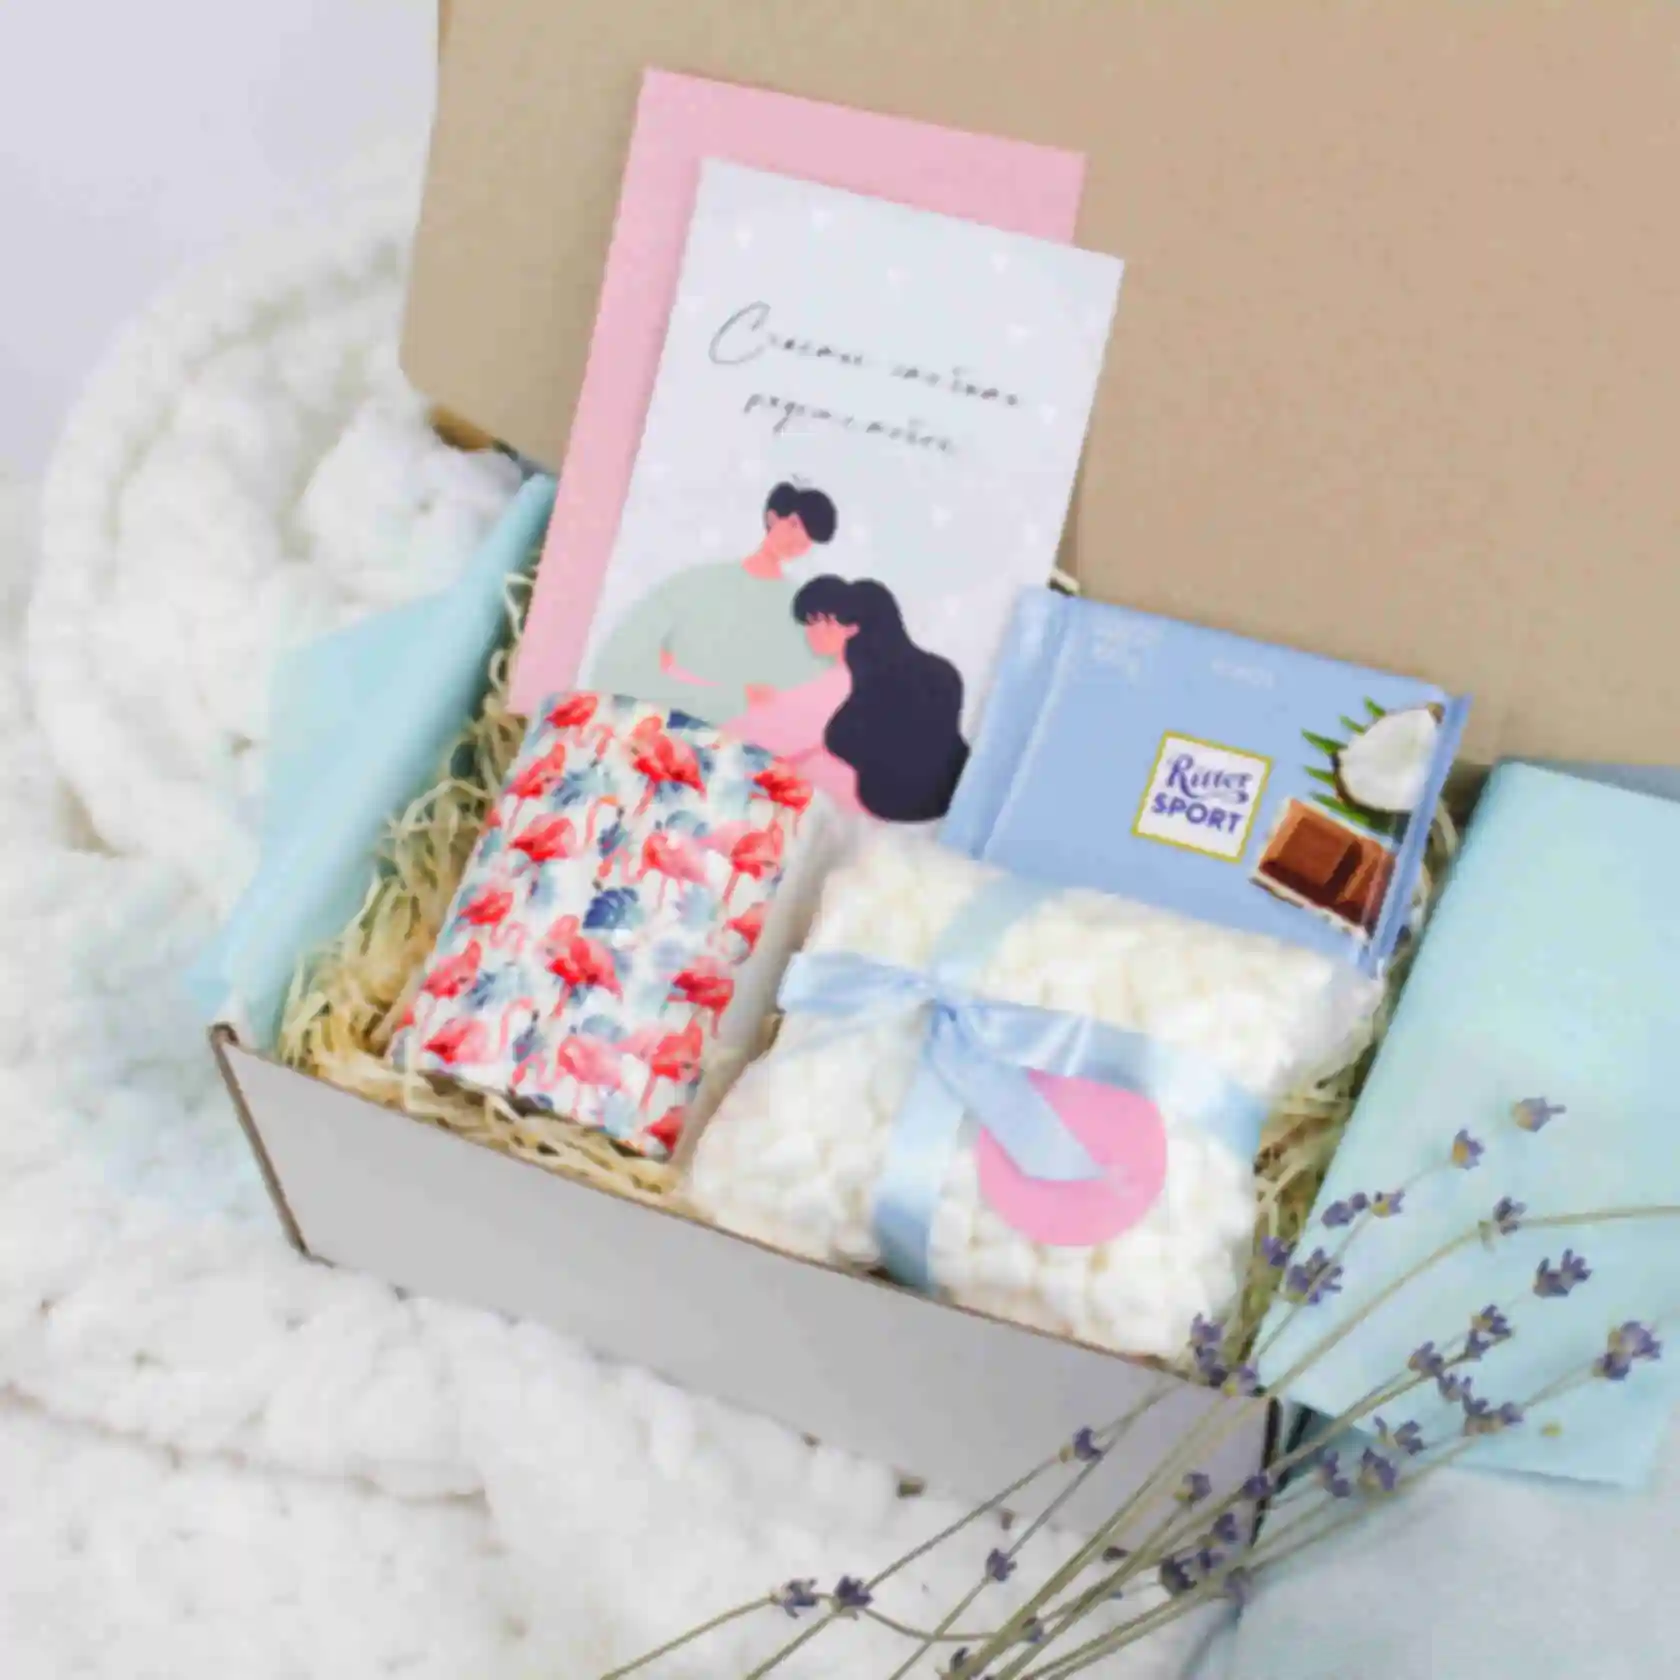 АРХИВ Flamingo box ❤ mini ⦁ Подарок девушке, подруге, сестре